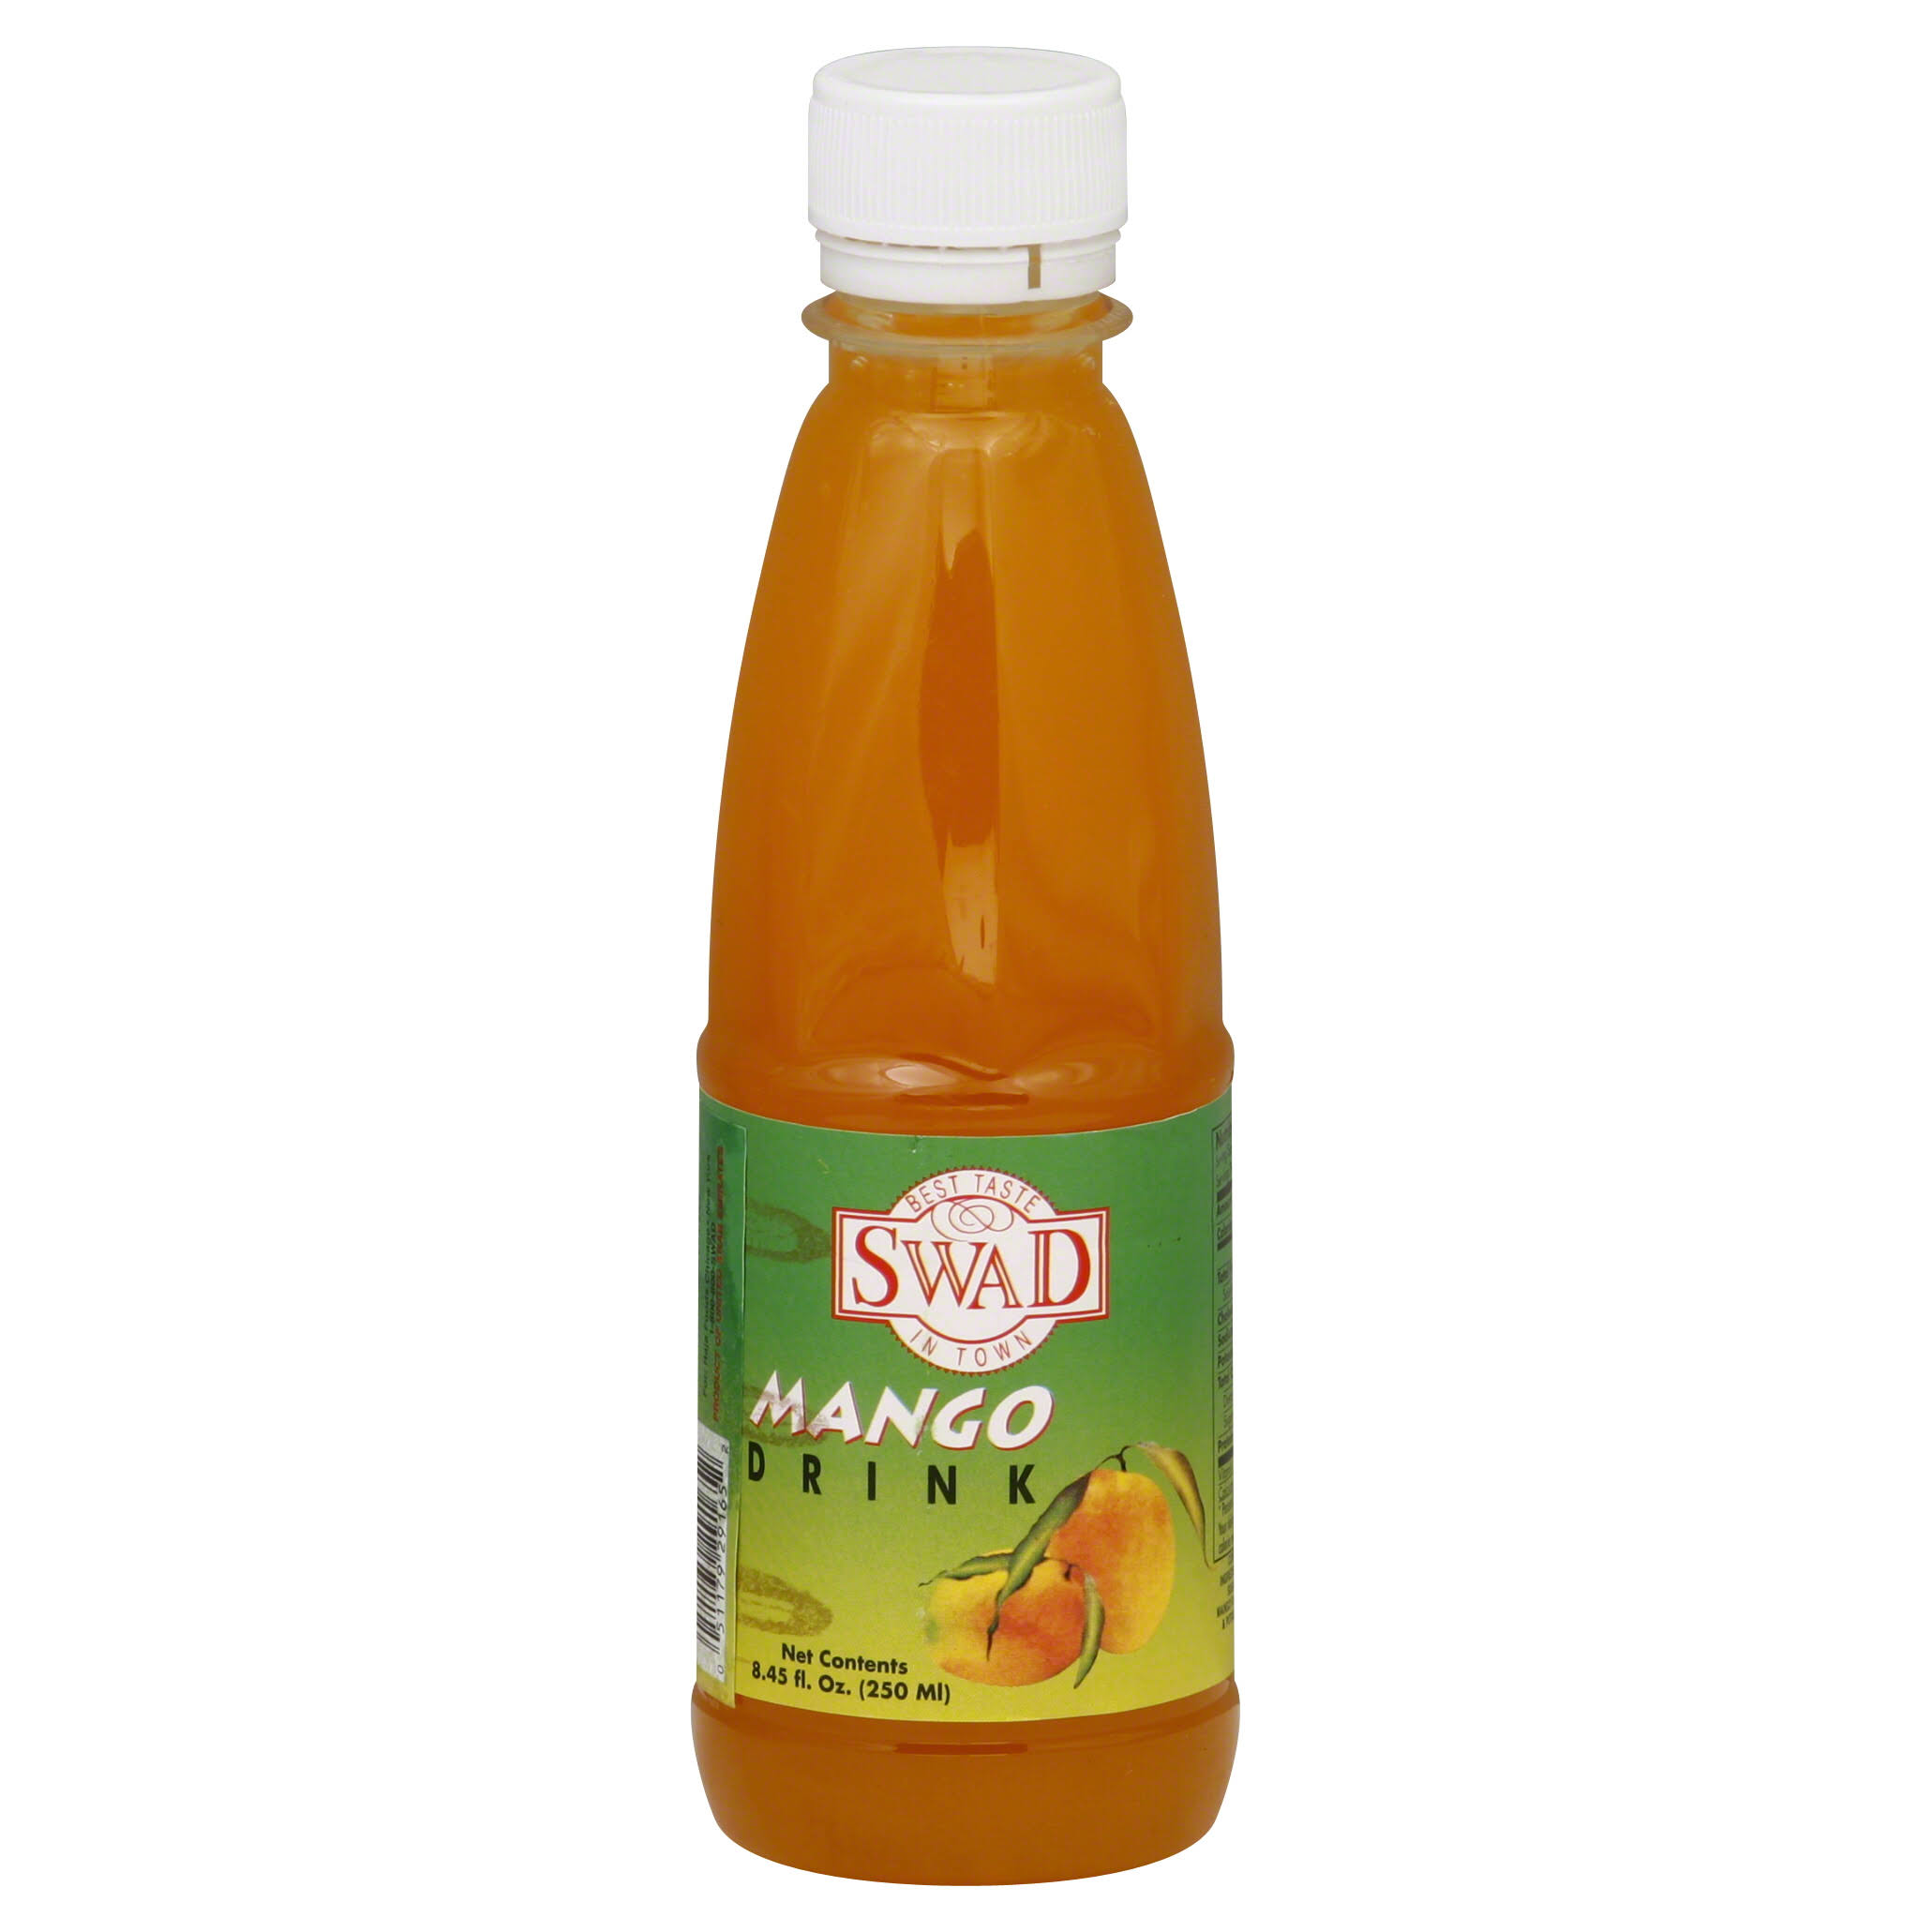 Swad Mango Drink - 8.45 fl oz